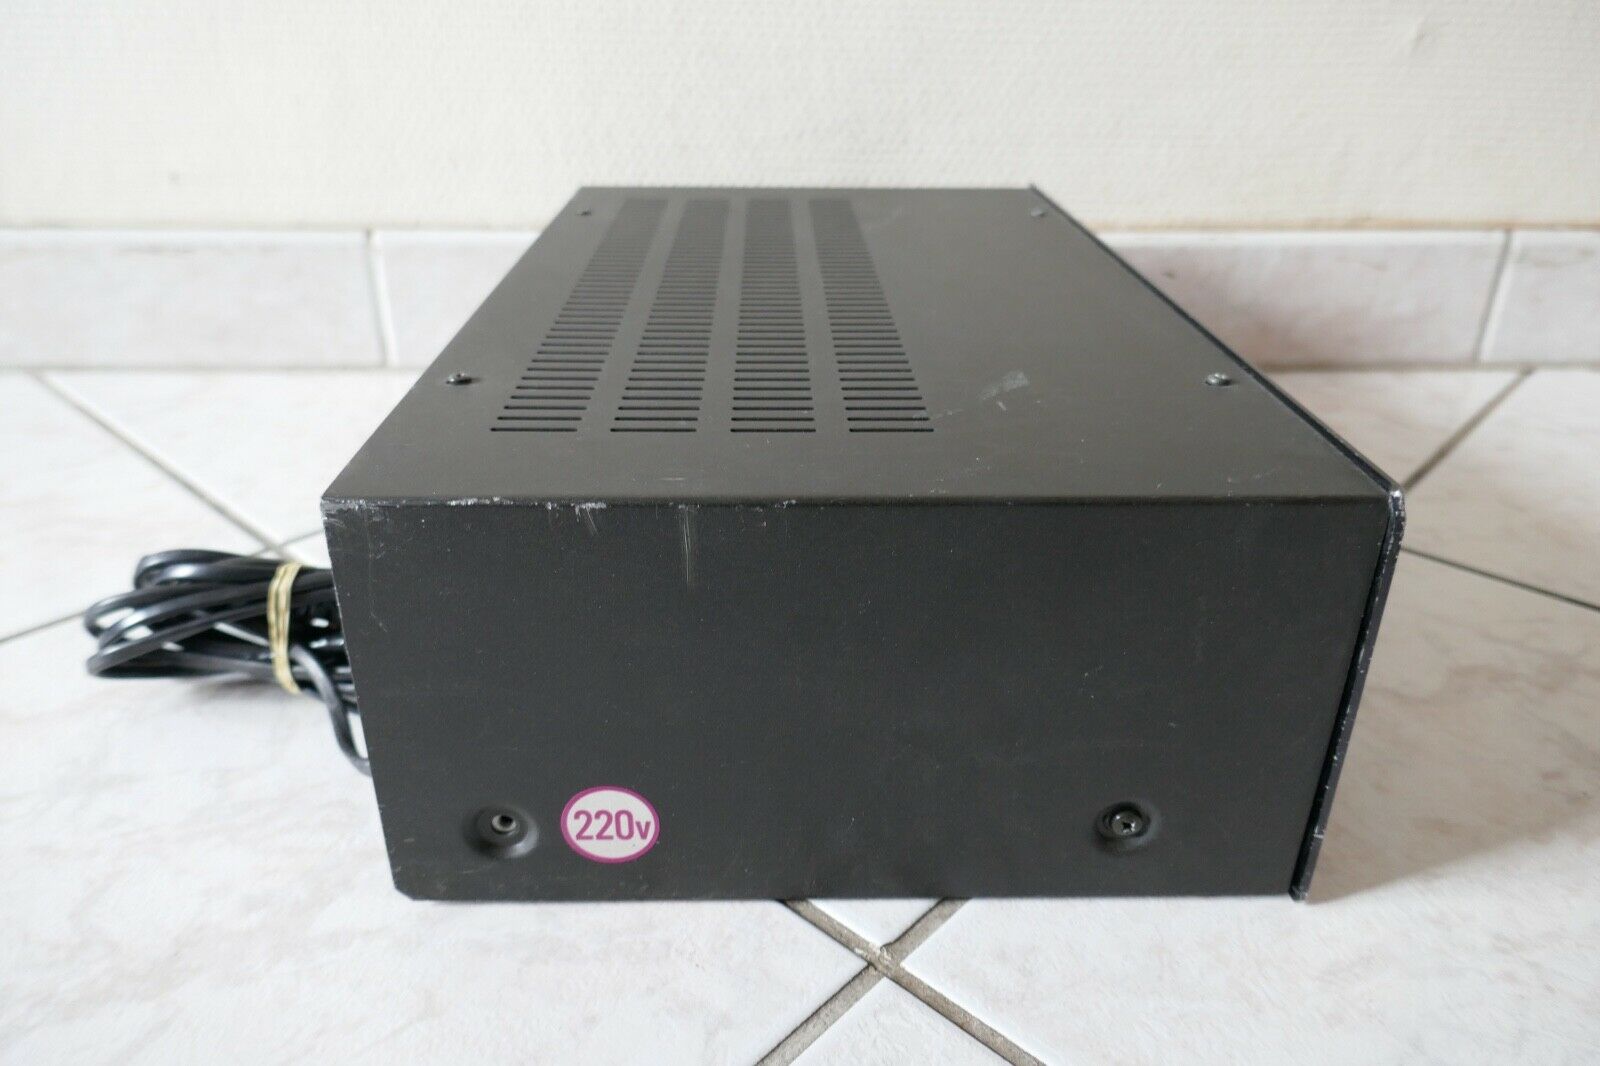 amplificateur amplifier sansui au-4900 vintage occasion